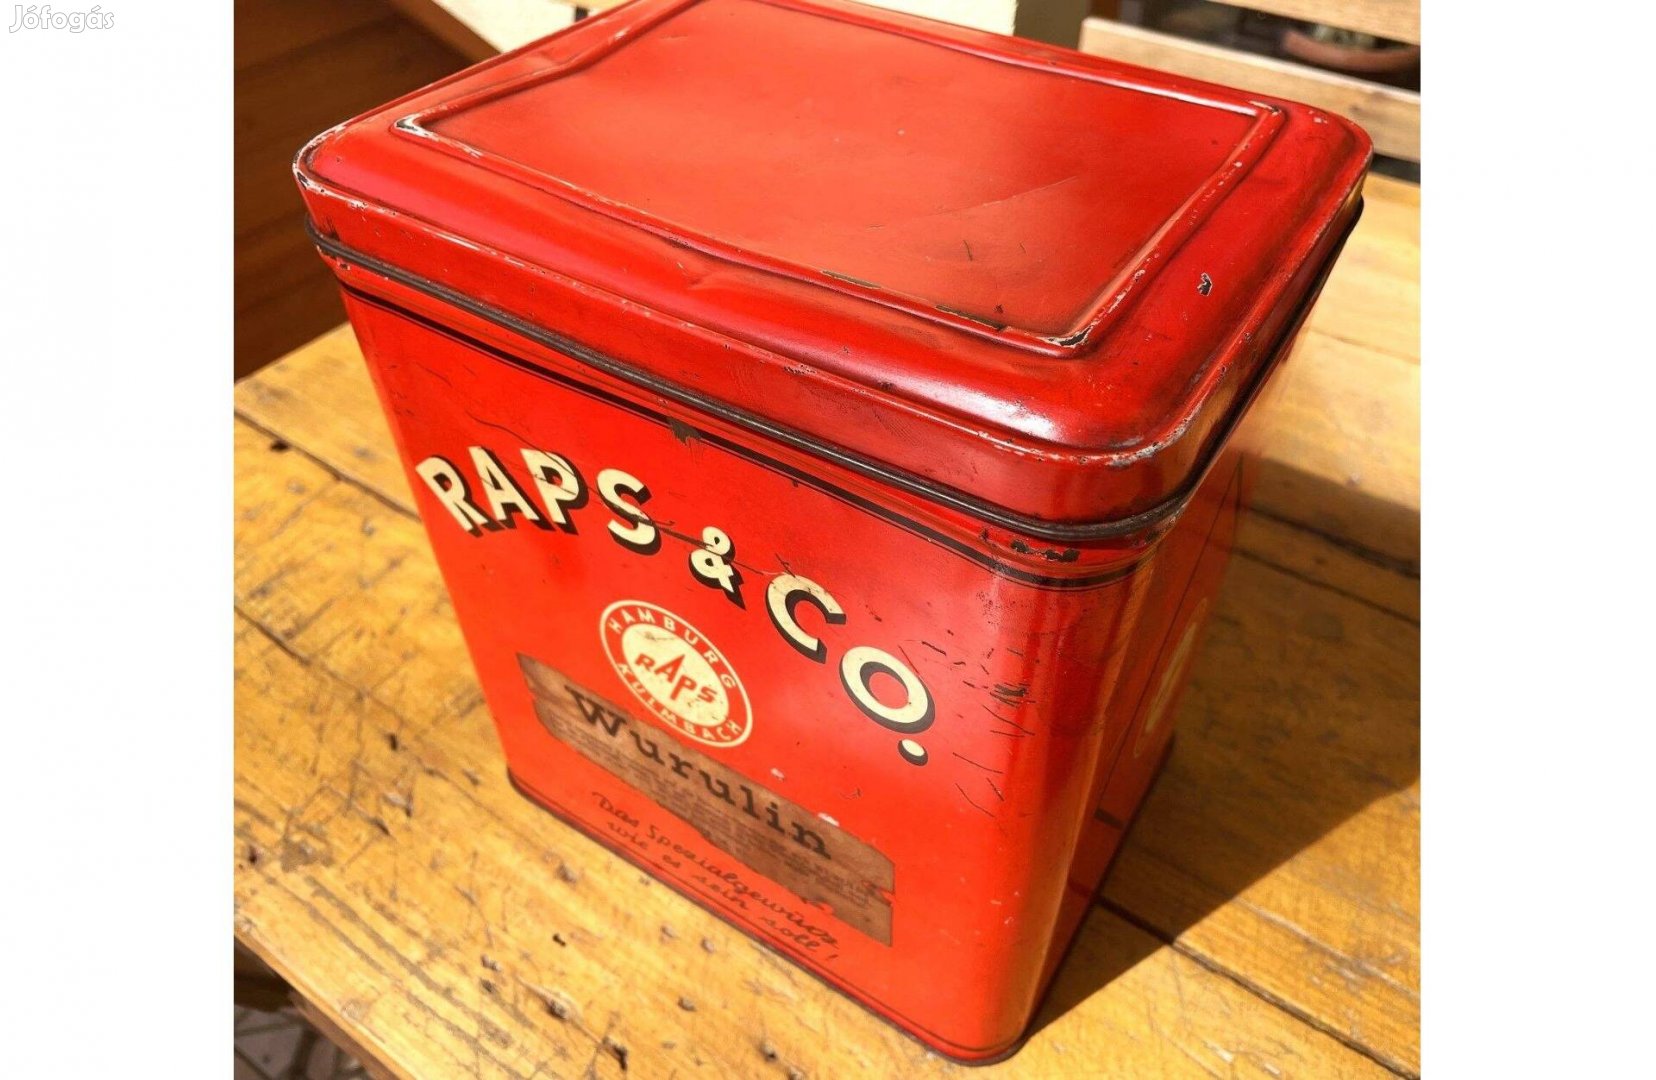 Raps & Co Hamburg Kulmbach feliratú piros fém doboz, tároló vintage